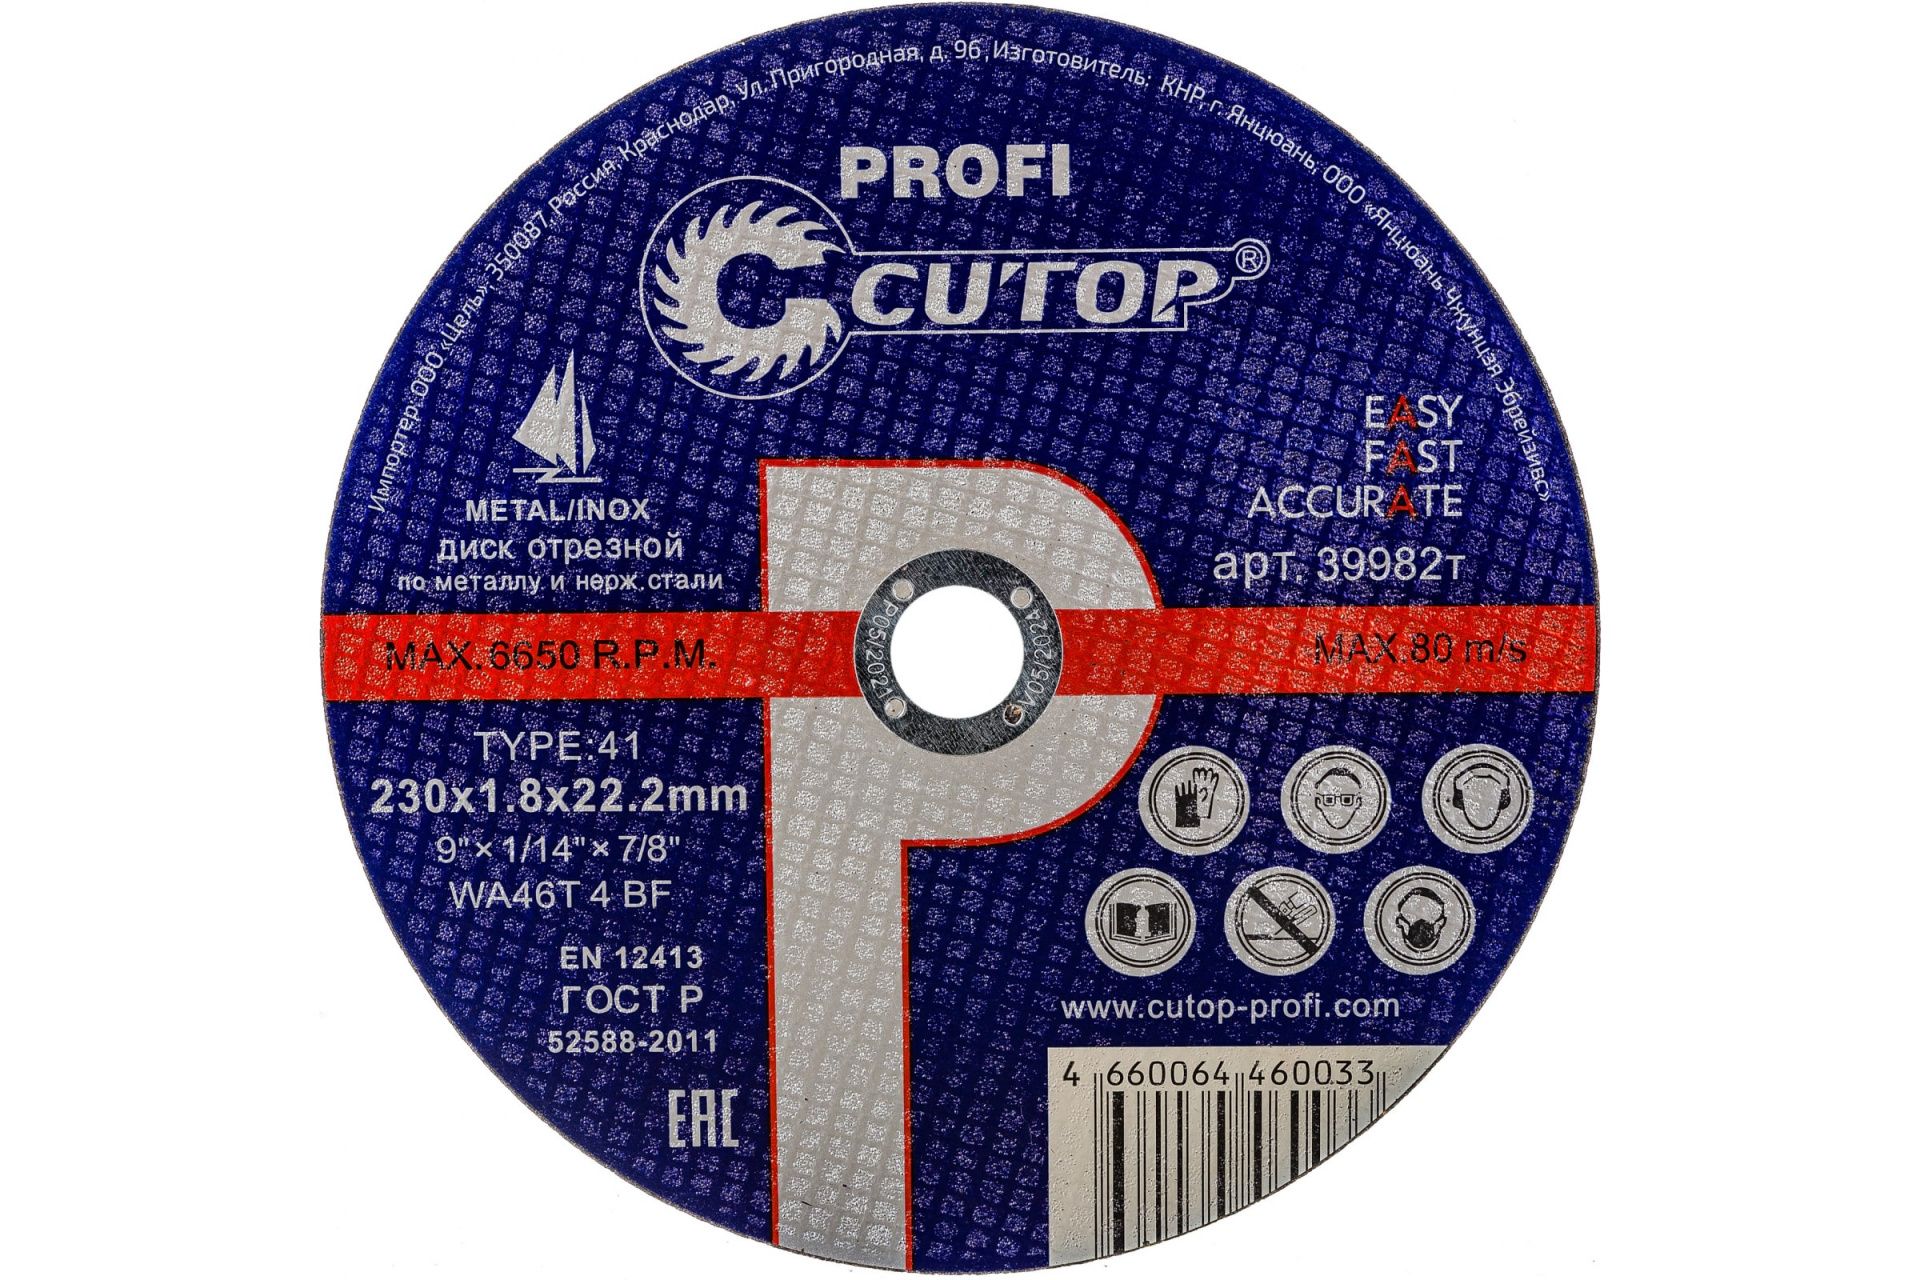 Диск отрезной по металлу и нержавеющей стали Cutop Profi Т41-230 х 1,8 х 22,2 мм